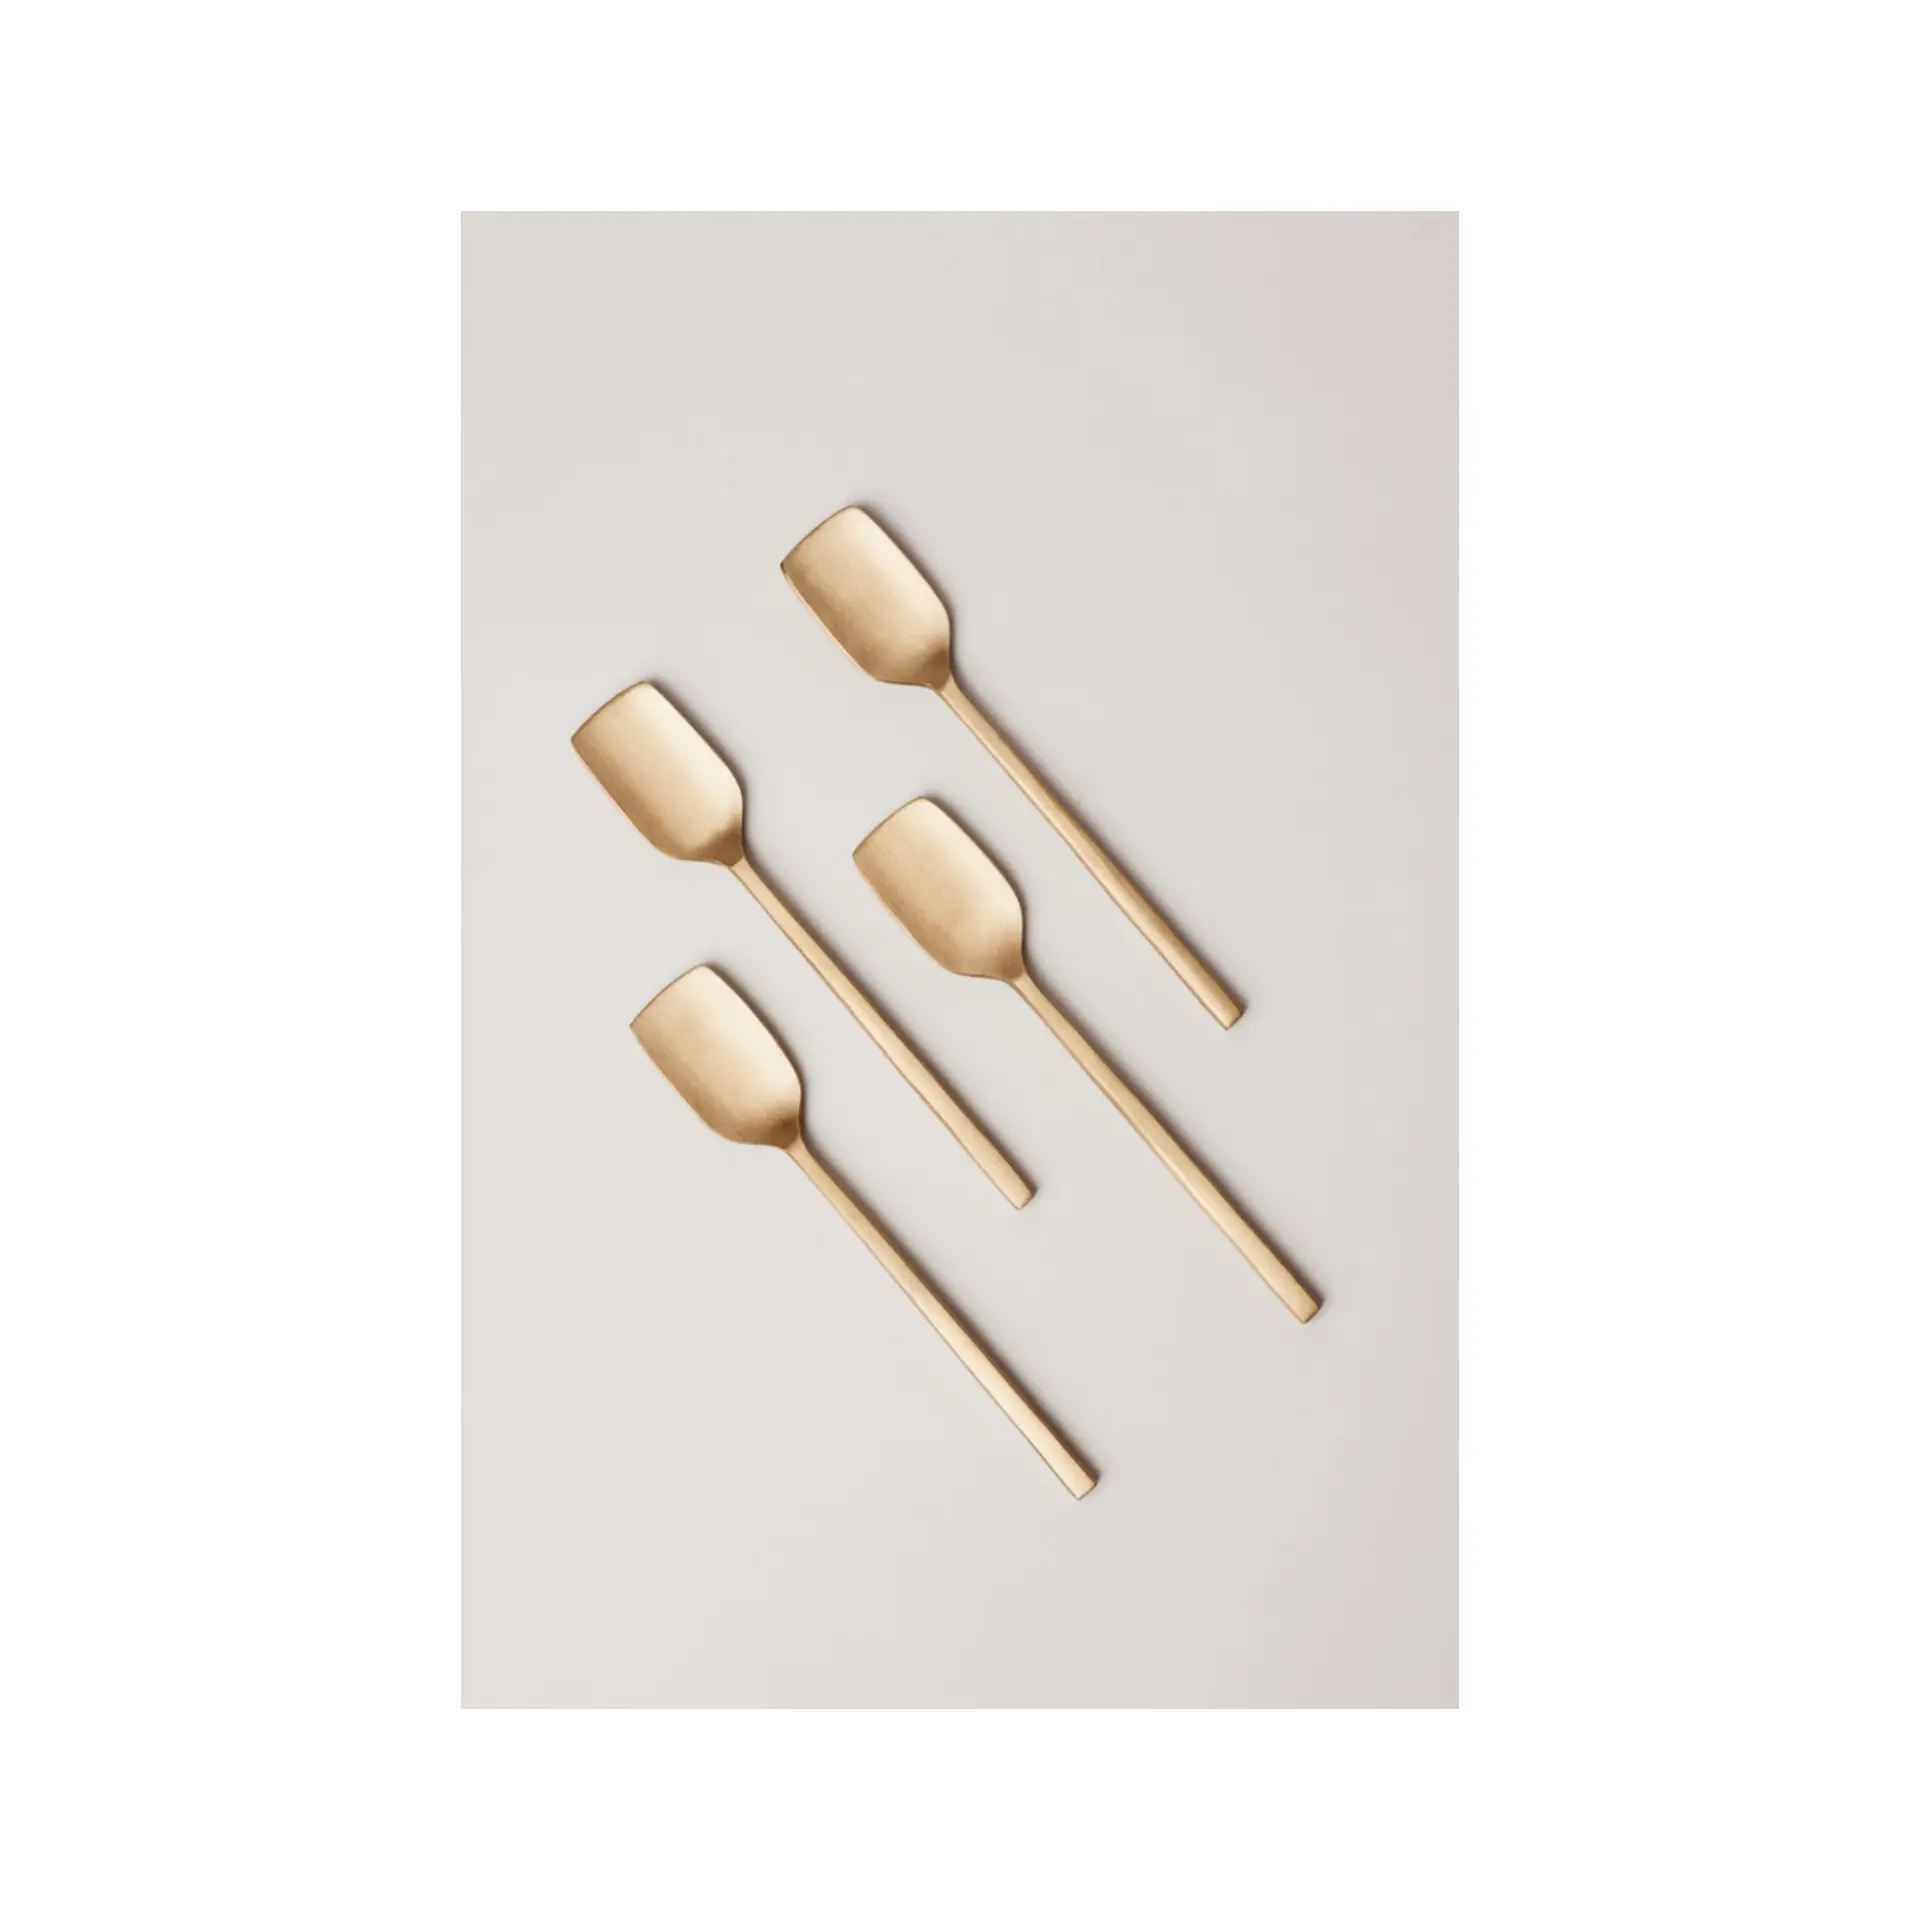 ملعقة آيس كريم نحاسية الأعلى مبيعًا مع طلاء غير لامع للاستخدام المنزلي بحجم مخصص من النحاس للأدوات مائدة من 4 أطباق للفنادق